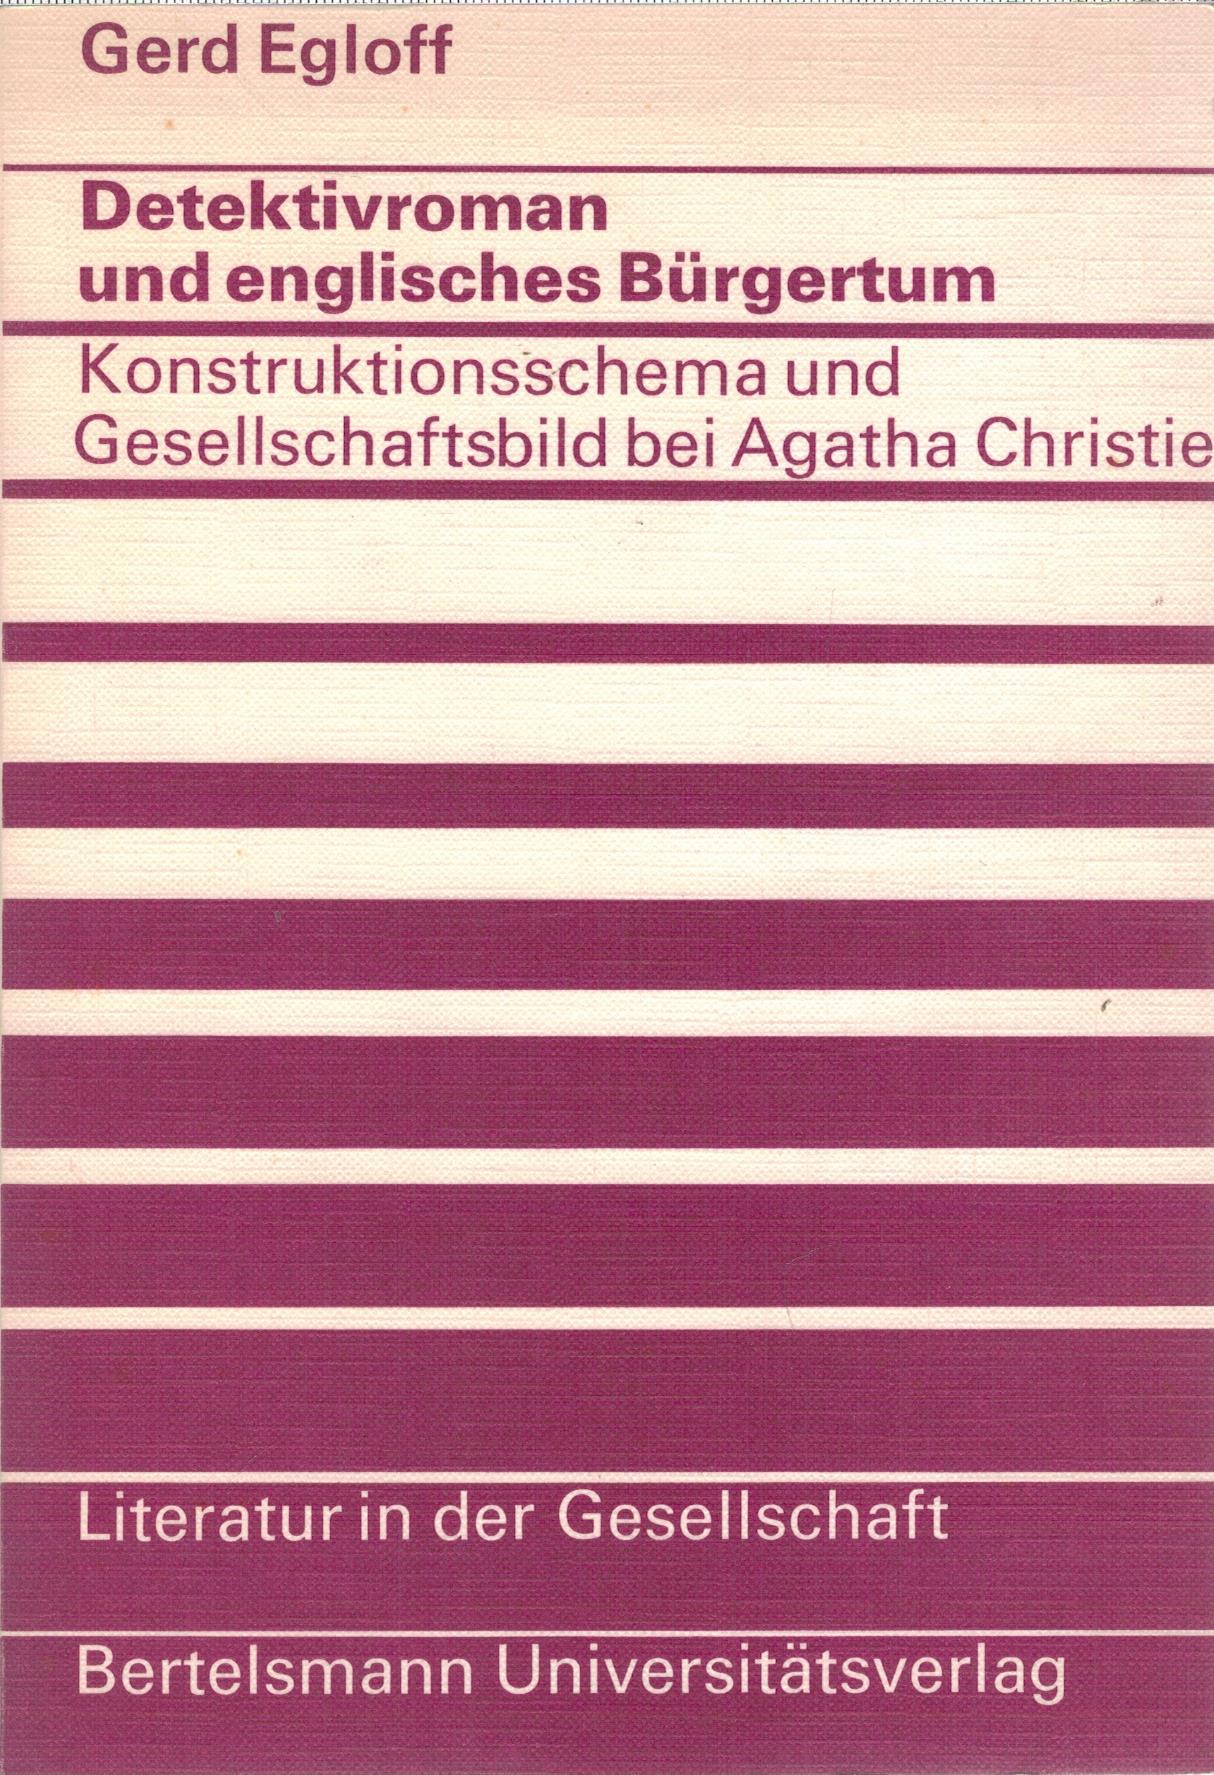 Detektivriman und englisches Bürgertum, Konstruktionsschema und Gesellschaftsbild bei Agatha Christie - Egloff, Gerd